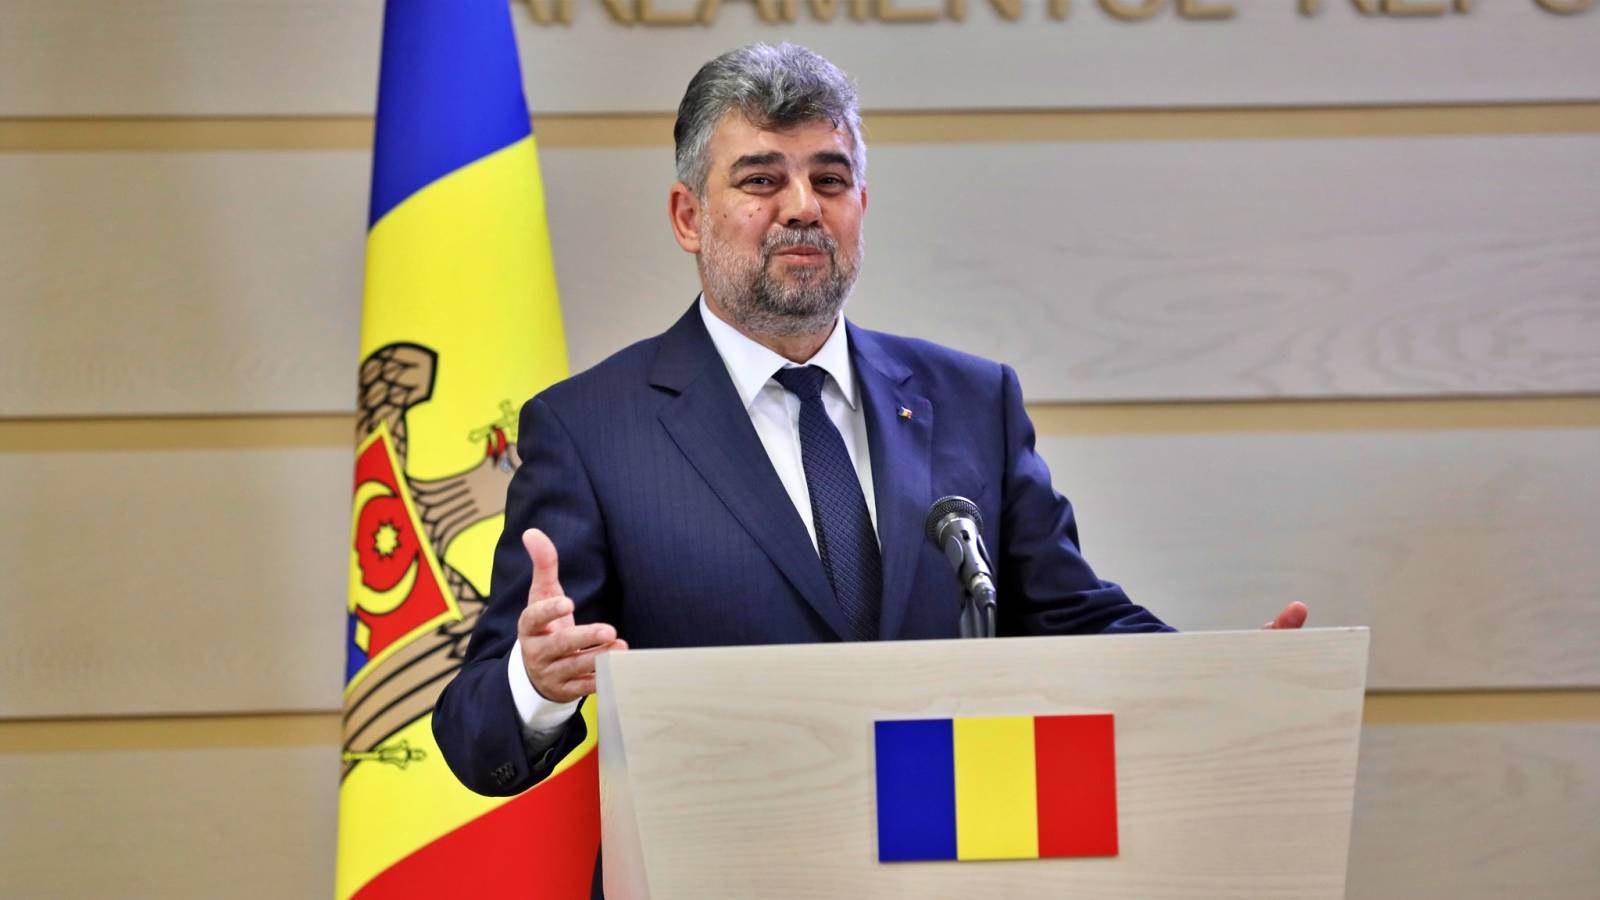 Marcel Ciolacu officiella meddelanden SENASTE GÅNG rumäner till PSD:s ordförande